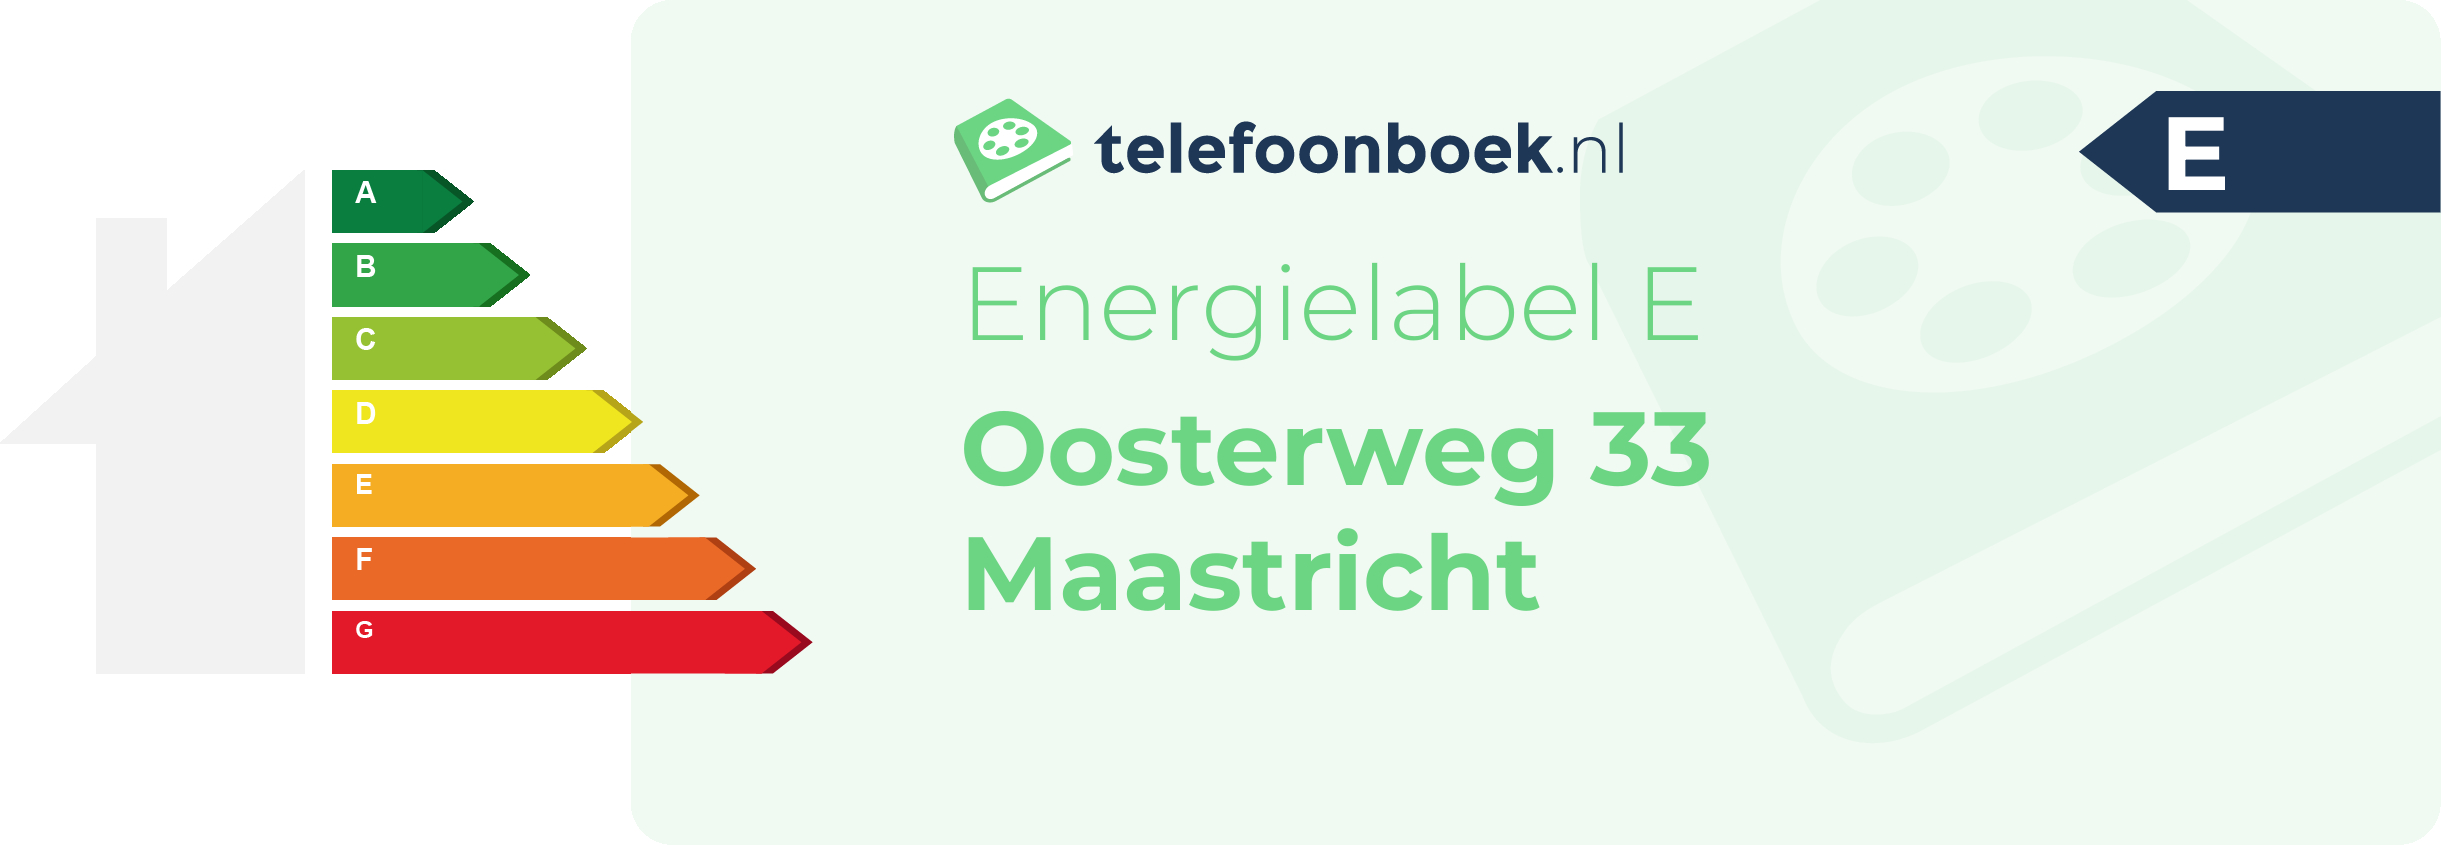 Energielabel Oosterweg 33 Maastricht